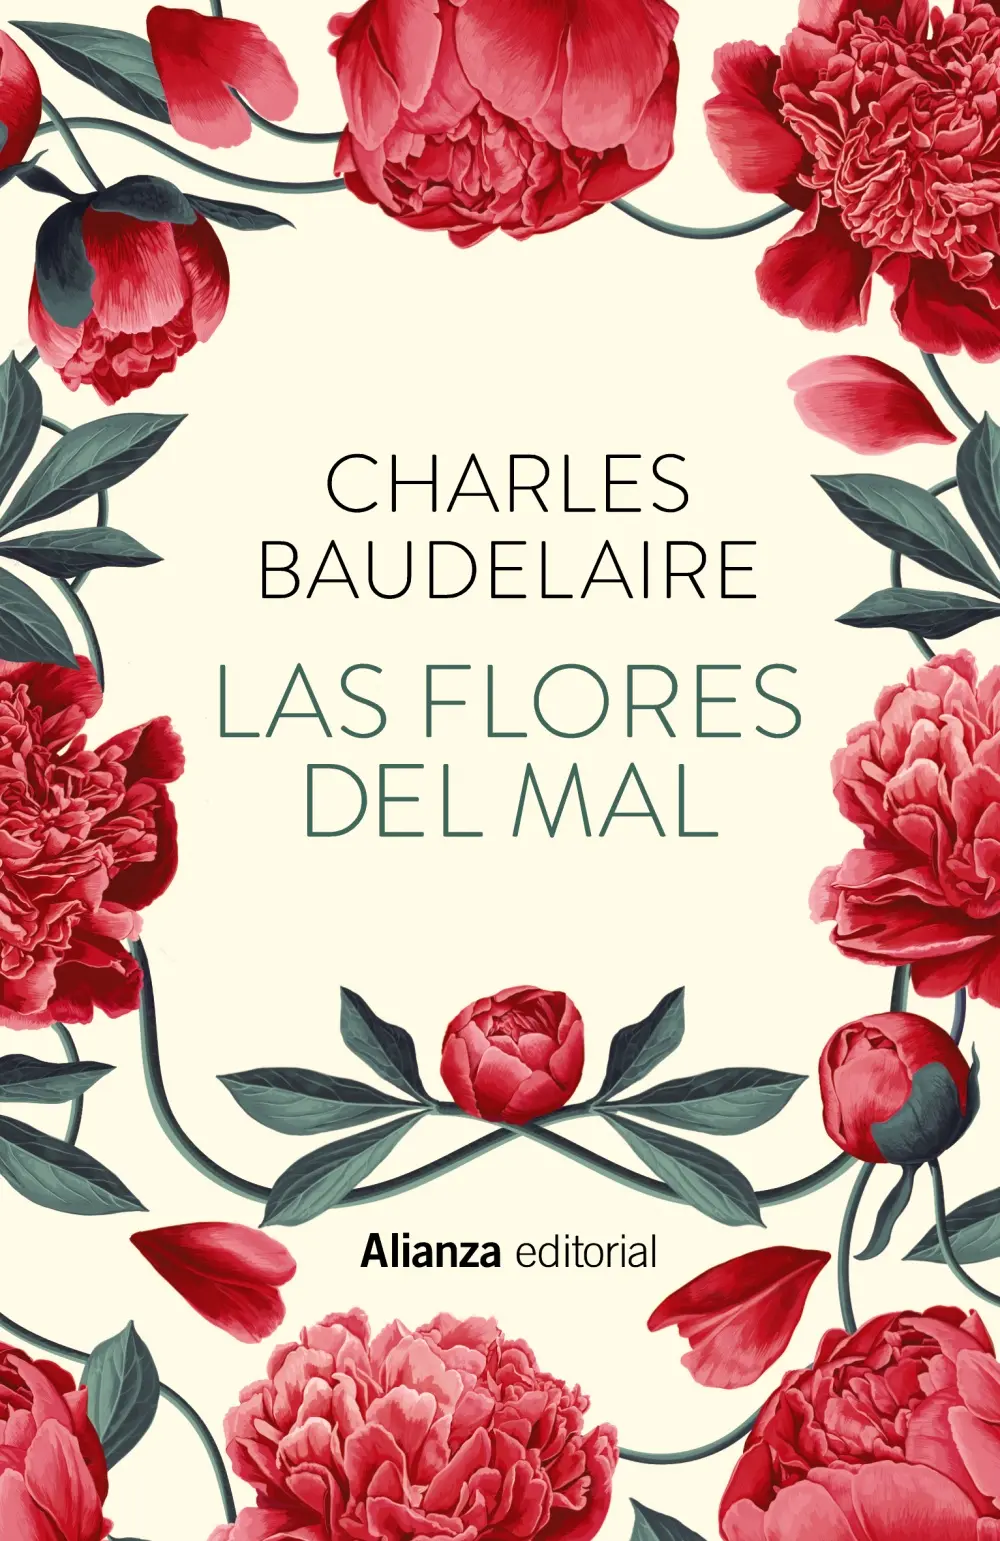 baudelaire las flores del mal - Qué es el amor Baudelaire